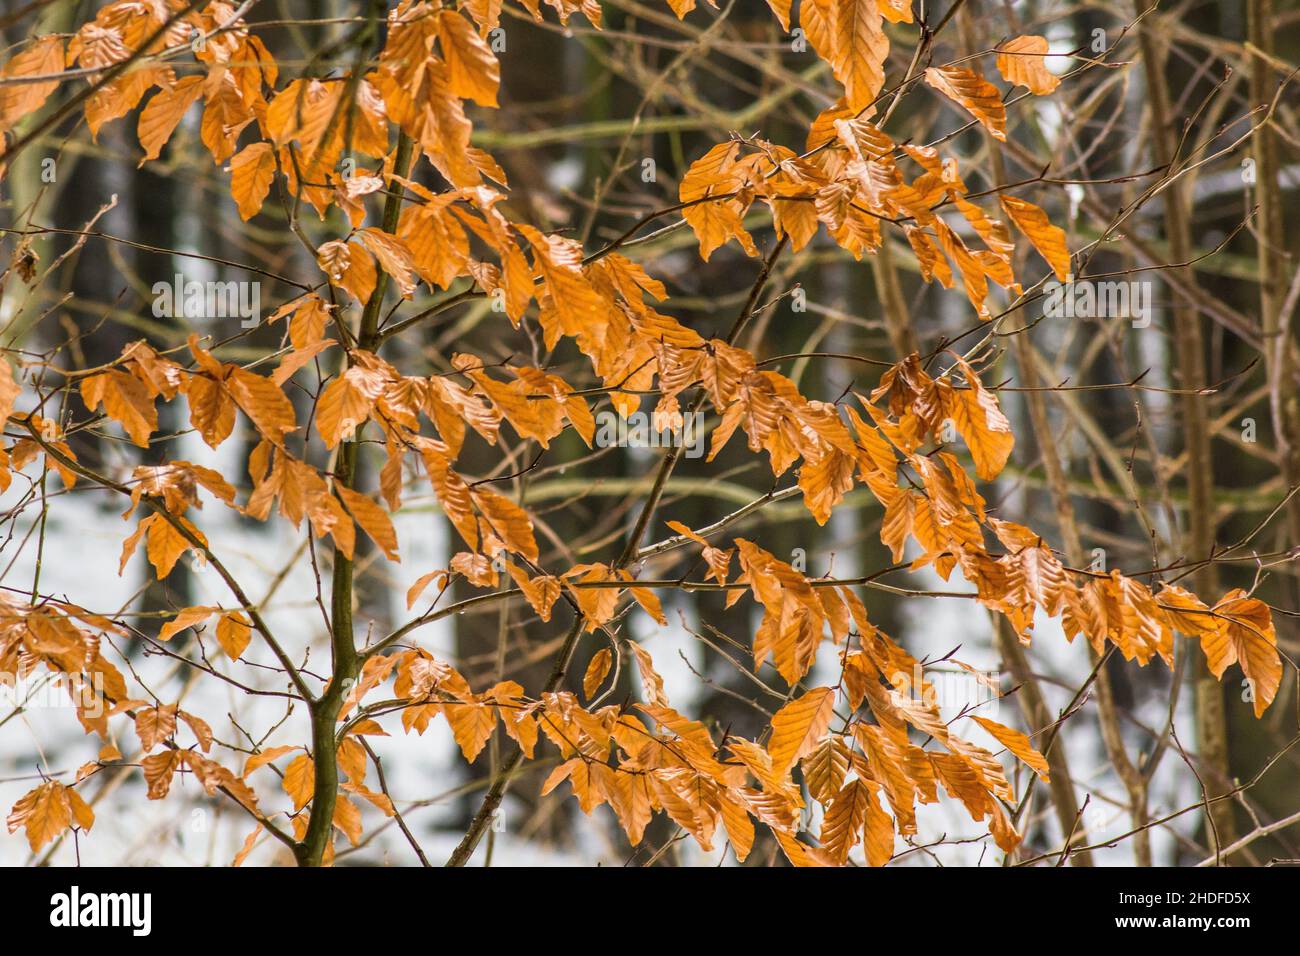 Podzimní oranžové listy keře na začátku zimy. Stockfoto